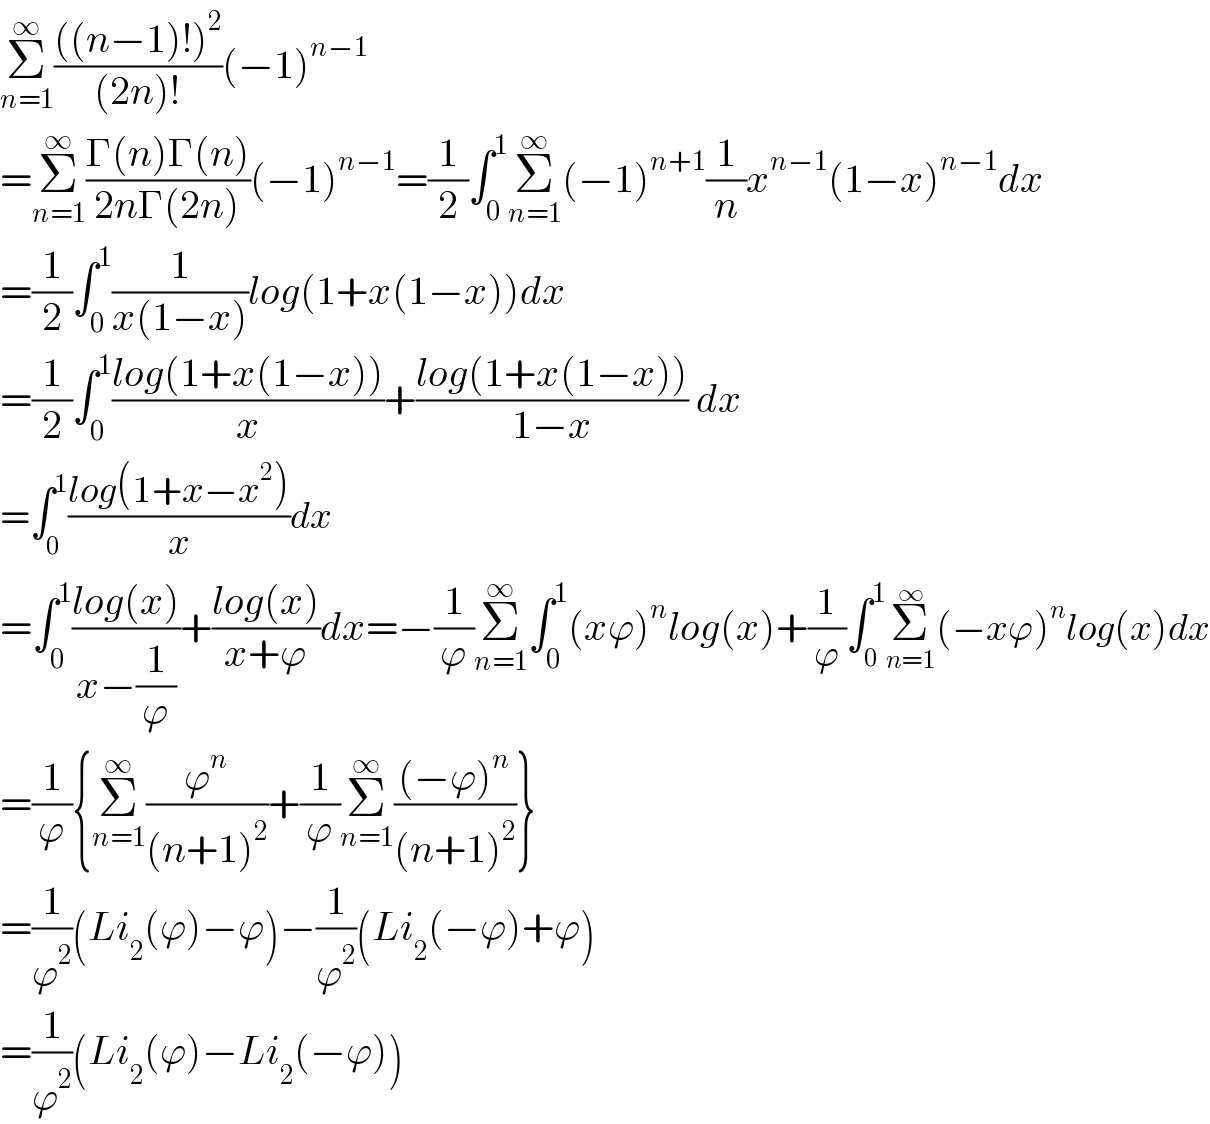 Σ_(n=1) ^∞ ((((n−1)!)^2 )/((2n)!))(−1)^(n−1)   =Σ_(n=1) ^∞ ((Γ(n)Γ(n))/(2nΓ(2n)))(−1)^(n−1) =(1/2)∫_0 ^1 Σ_(n=1) ^∞ (−1)^(n+1) (1/n)x^(n−1) (1−x)^(n−1) dx  =(1/2)∫_0 ^1 (1/(x(1−x)))log(1+x(1−x))dx  =(1/2)∫_0 ^1 ((log(1+x(1−x)))/x)+((log(1+x(1−x)))/(1−x)) dx  =∫_0 ^1 ((log(1+x−x^2 ))/x)dx       =∫_0 ^1 ((log(x))/(x−(1/ϕ)))+((log(x))/(x+ϕ))dx=−(1/ϕ)Σ_(n=1) ^∞ ∫_0 ^1 (xϕ)^n log(x)+(1/ϕ)∫_0 ^1 Σ_(n=1) ^∞ (−xϕ)^n log(x)dx  =(1/ϕ){Σ_(n=1) ^∞ (ϕ^n /((n+1)^2 ))+(1/ϕ)Σ_(n=1) ^∞ (((−ϕ)^n )/((n+1)^2 ))}  =(1/ϕ^2 )(Li_2 (ϕ)−ϕ)−(1/ϕ^2 )(Li_2 (−ϕ)+ϕ)  =(1/ϕ^2 )(Li_2 (ϕ)−Li_2 (−ϕ))  